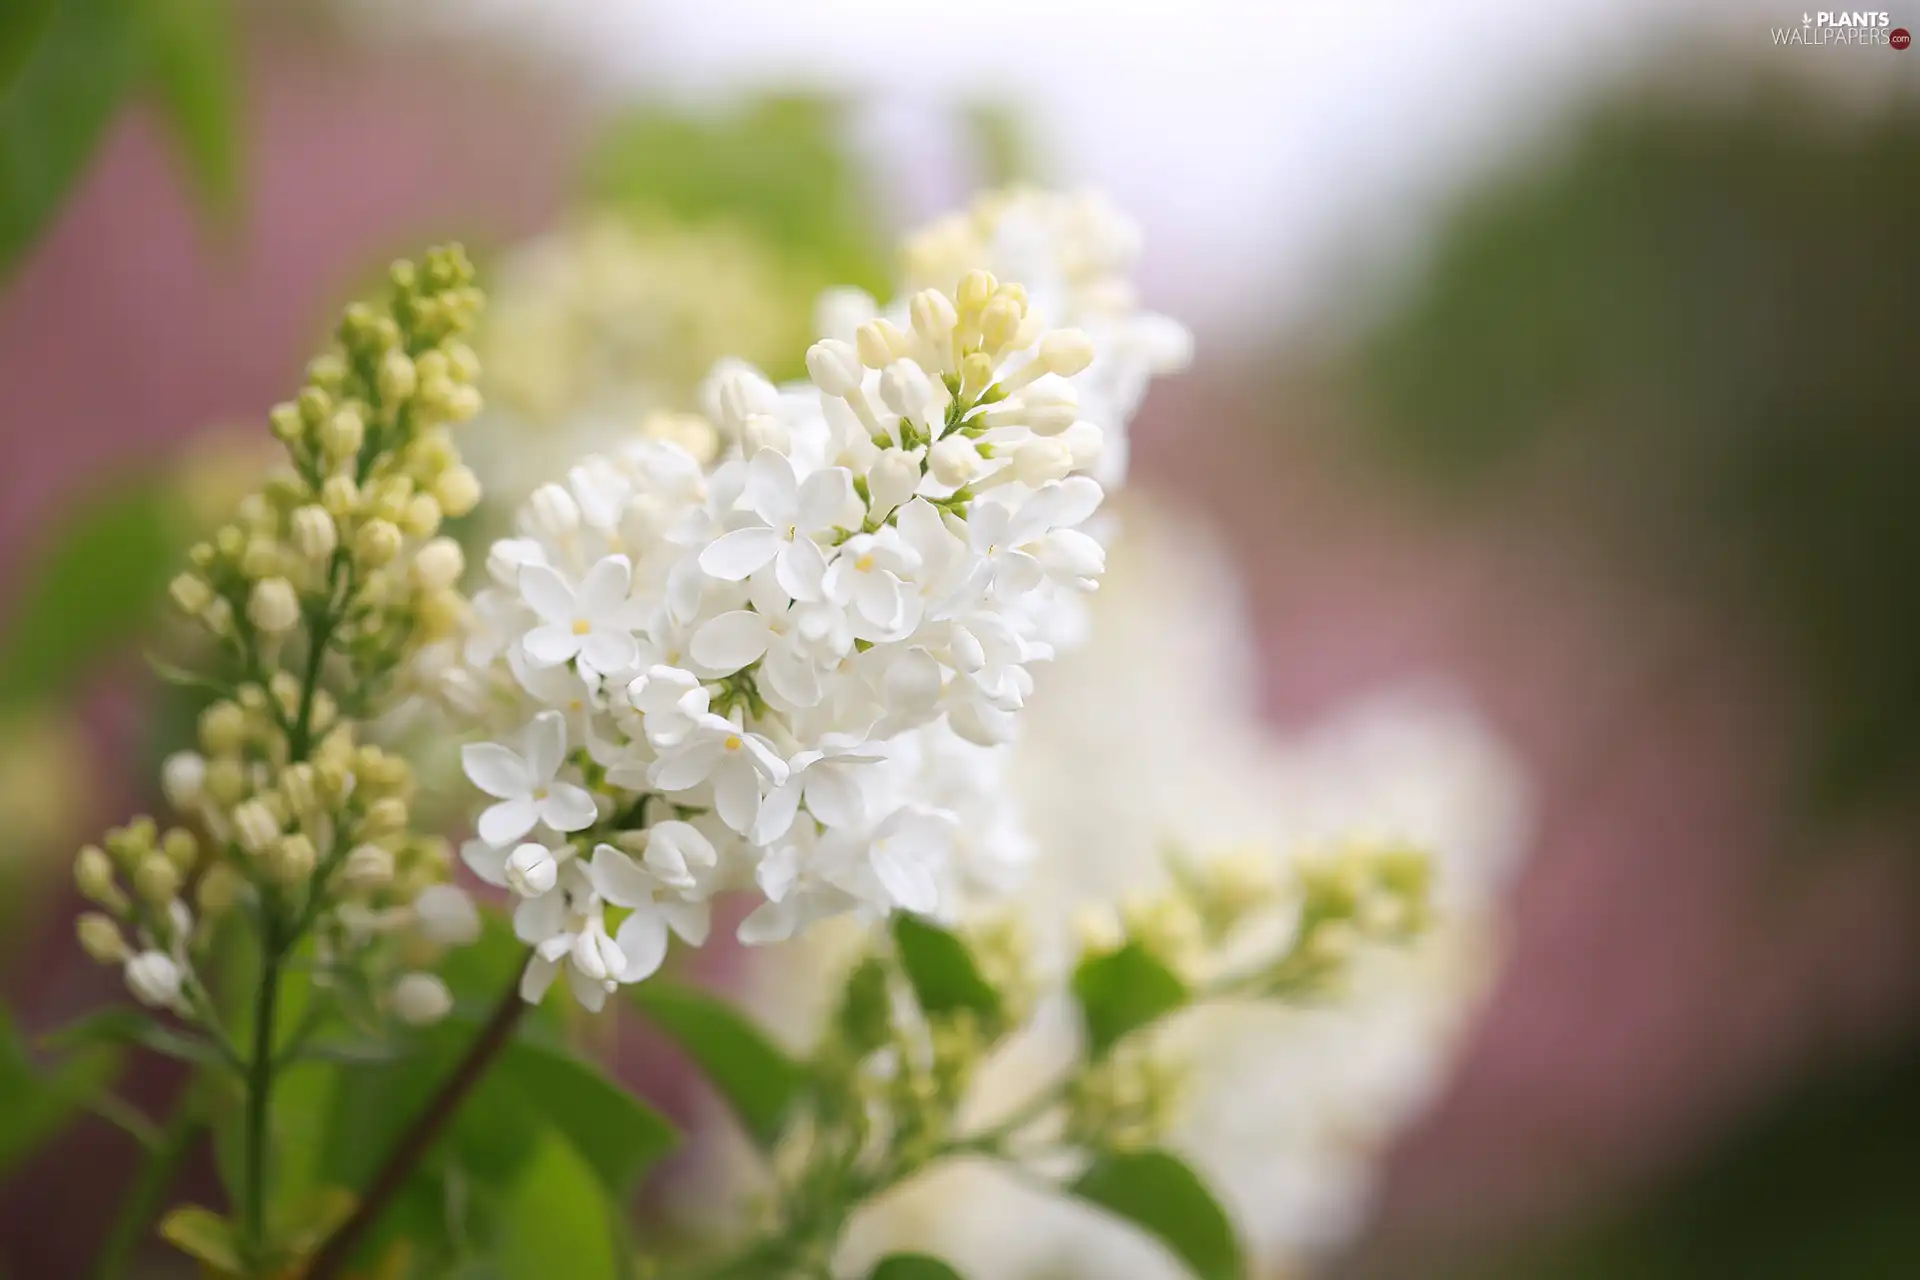 White, Syringa, Flowers, without